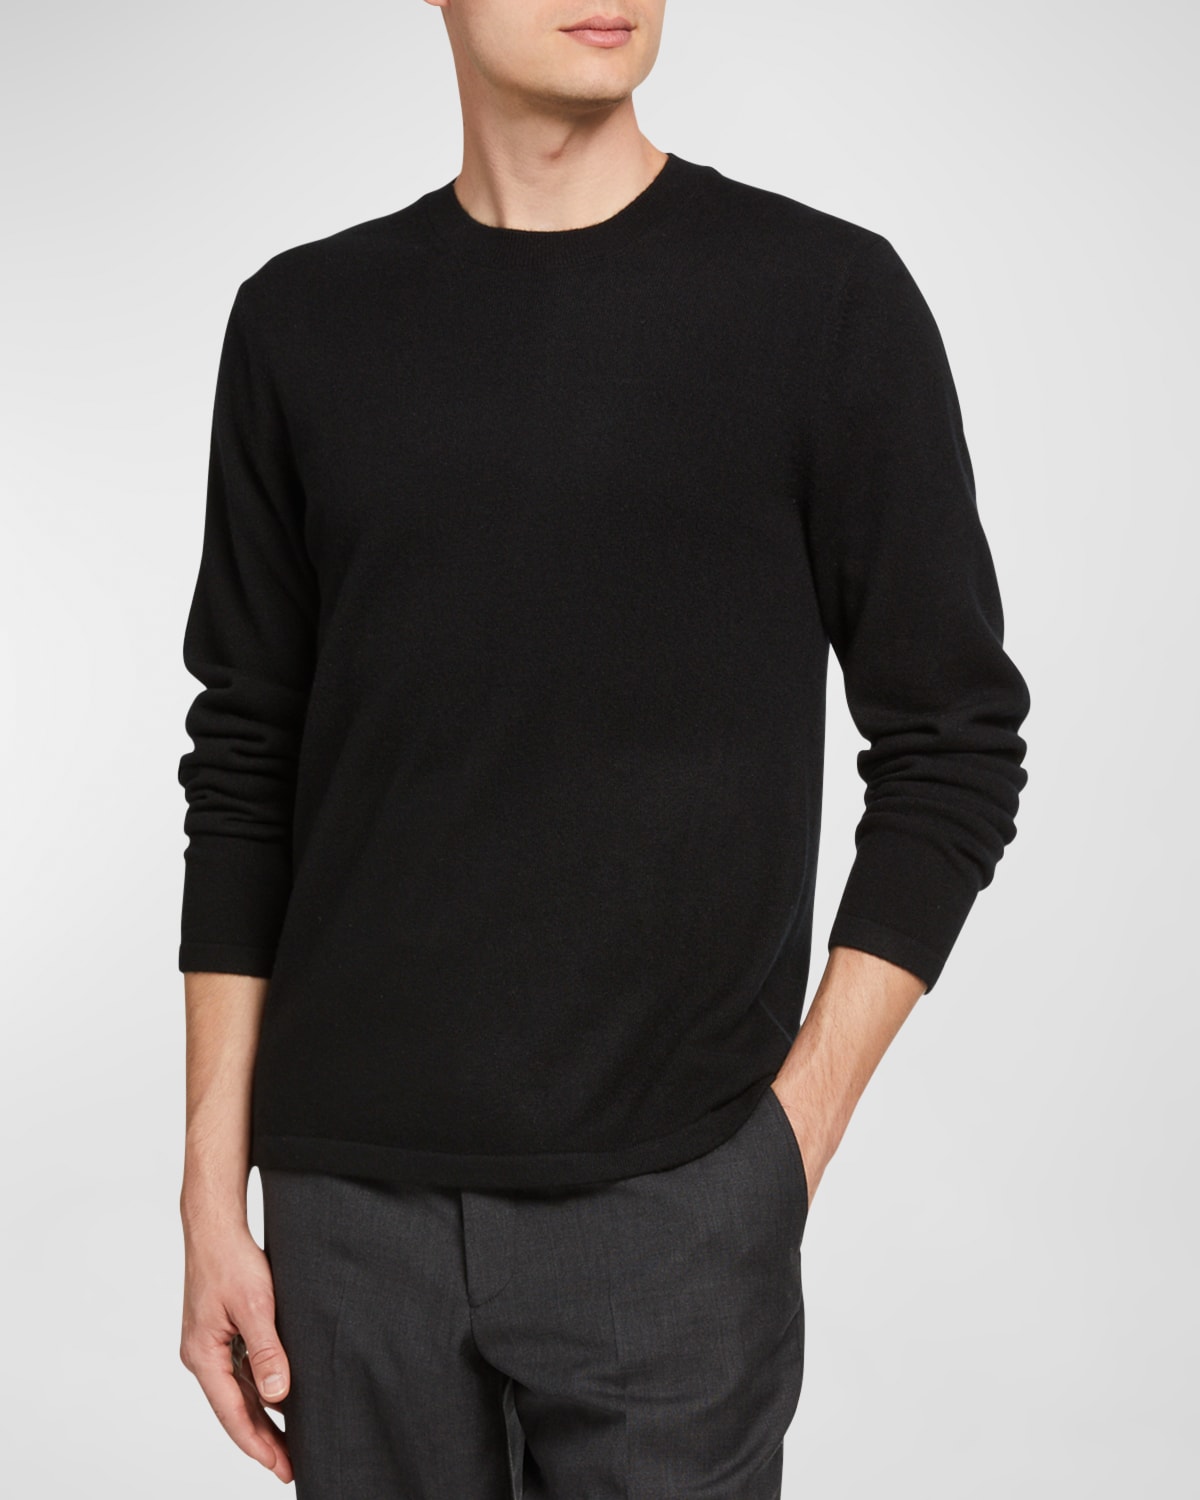 Vince Men's Cashmere Crewneck Sweater